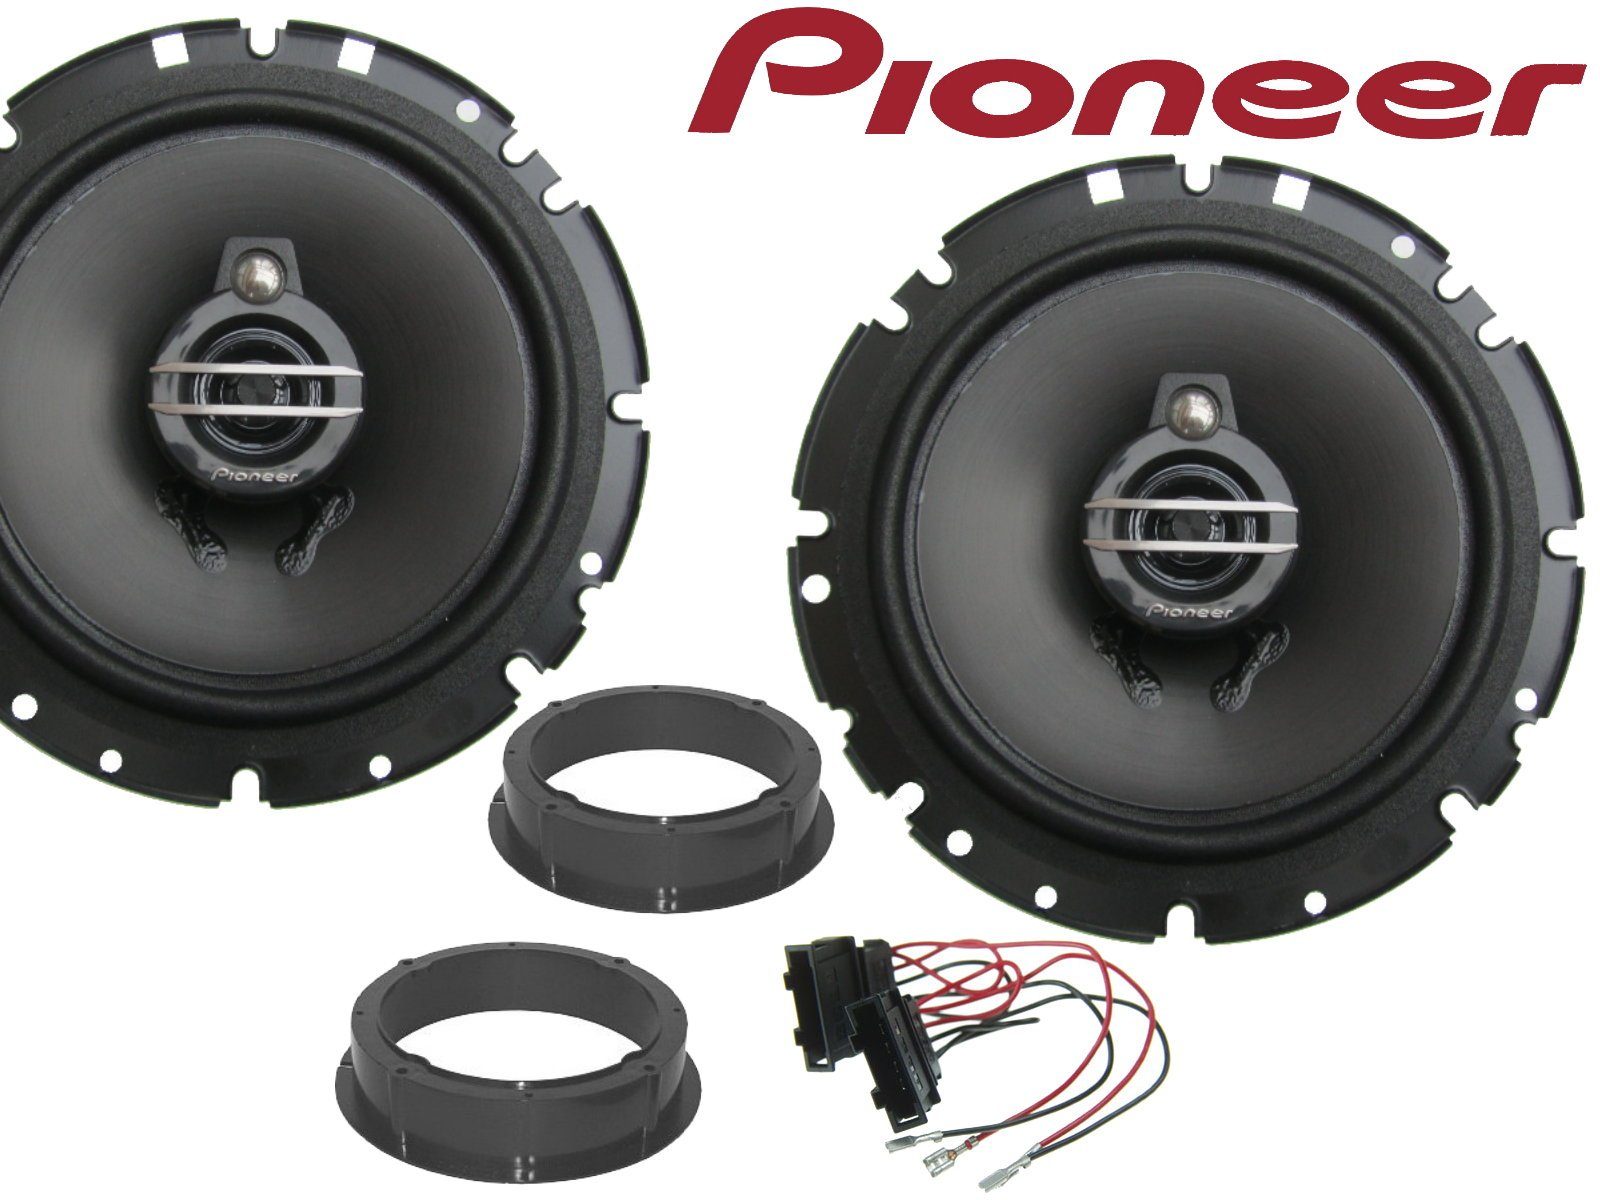 DSX Pioneer 3wege passend für Seat Arosa 1997 bis 2004 Auto-Lautsprecher (40 W)